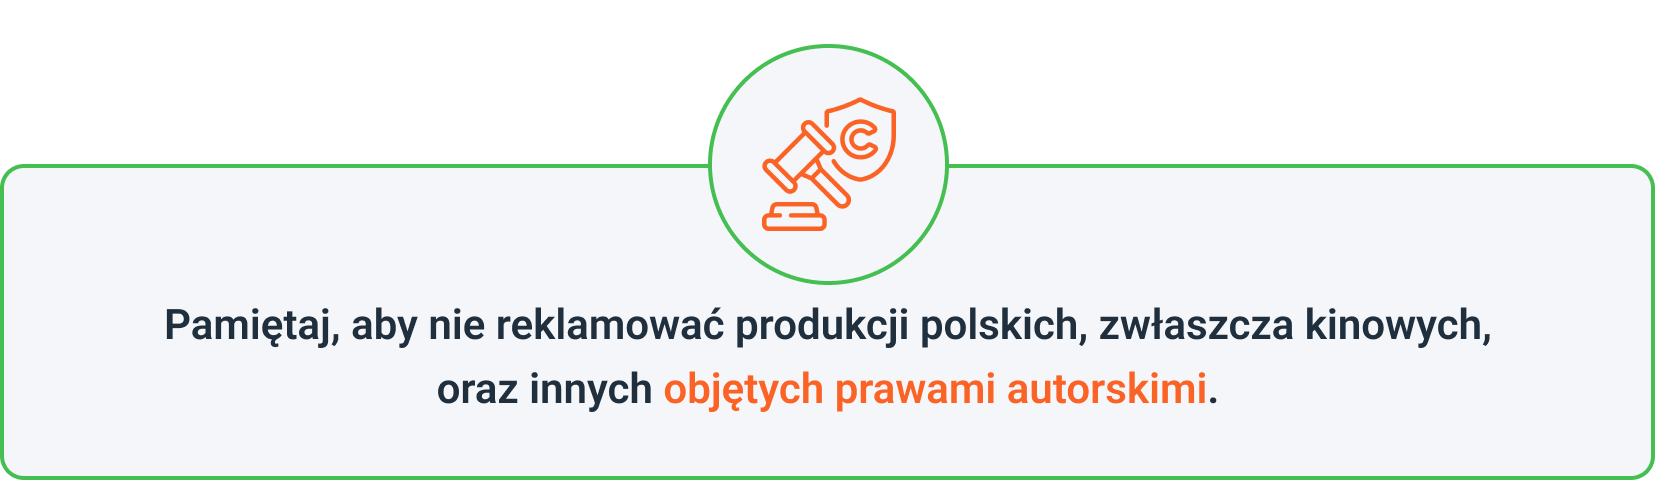 Pamiętaj, aby nie reklamować polskich produkcji ani innych objętych prawami autorskimi.